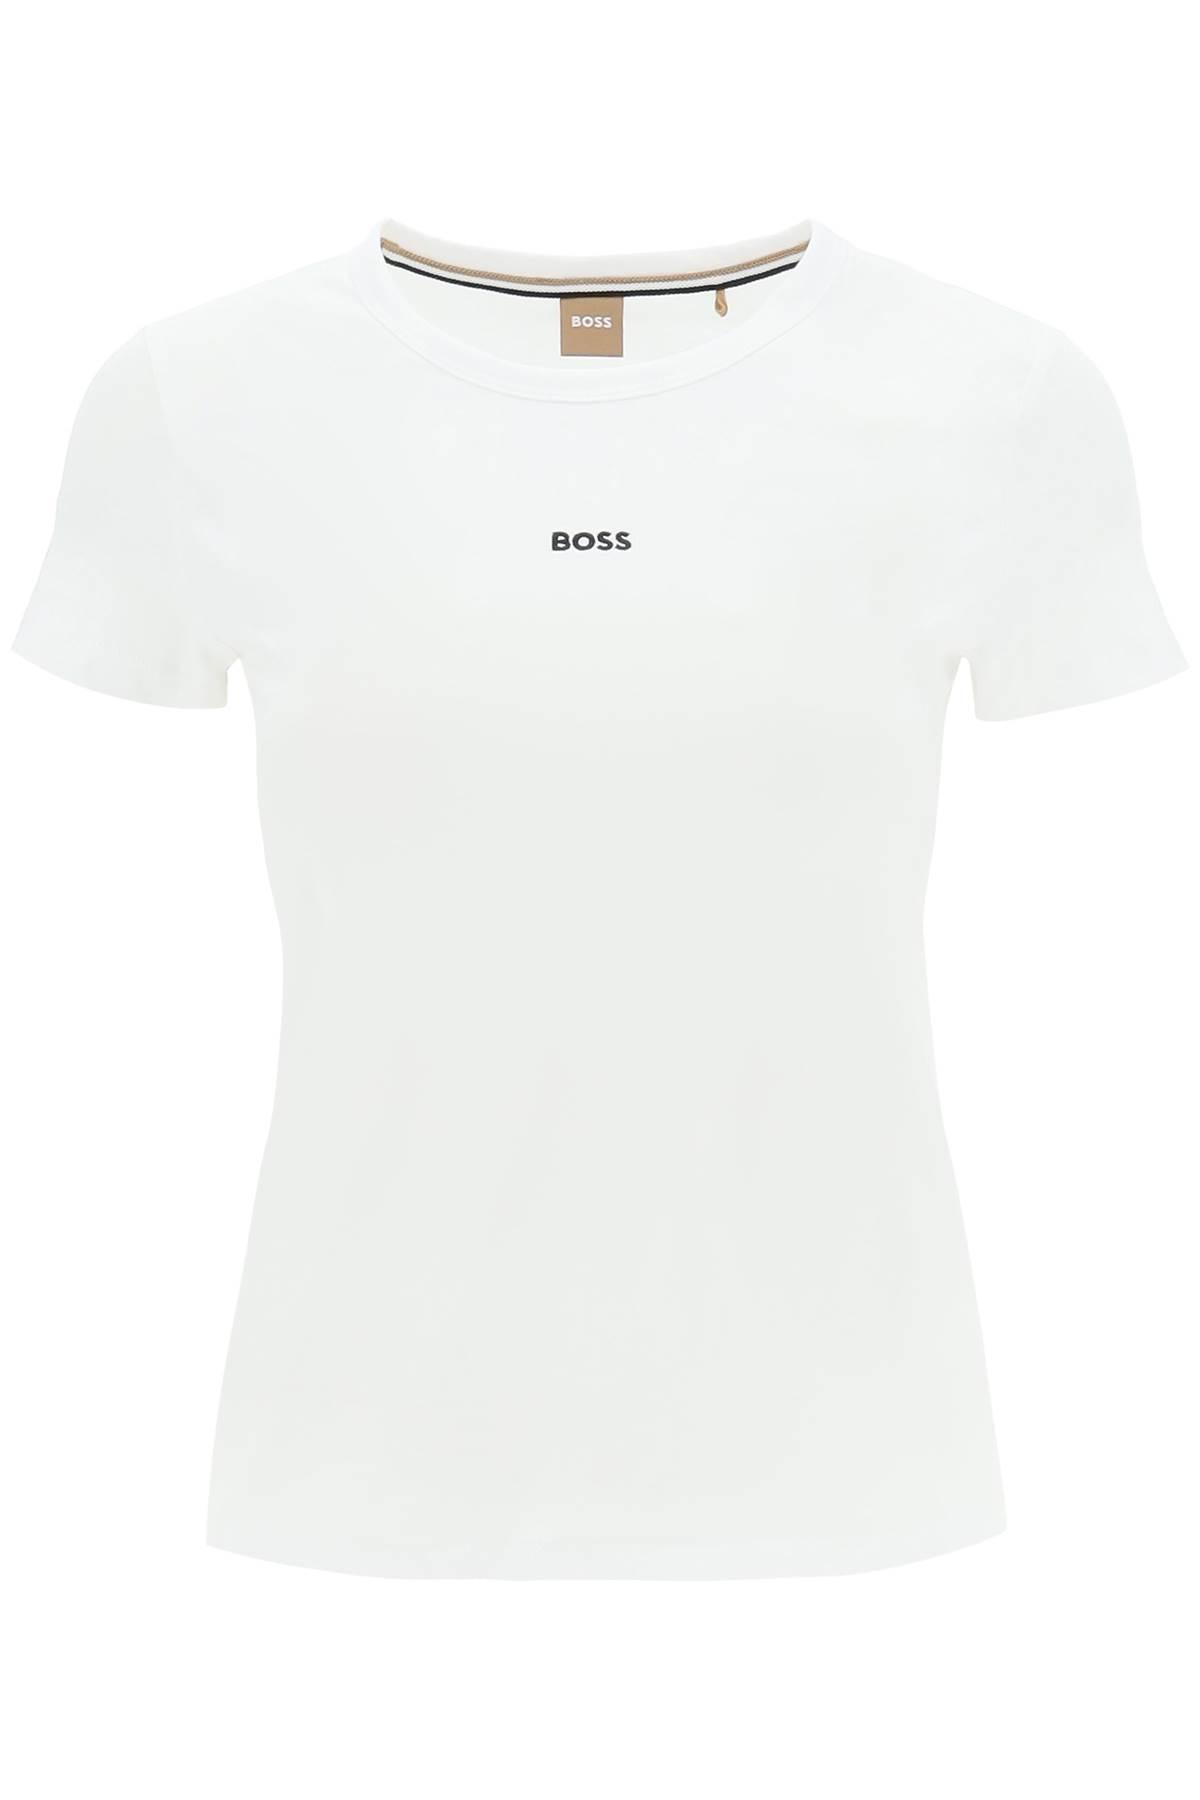 BOSS 'Eventa' T -Shirt in Weiß | Lyst DE